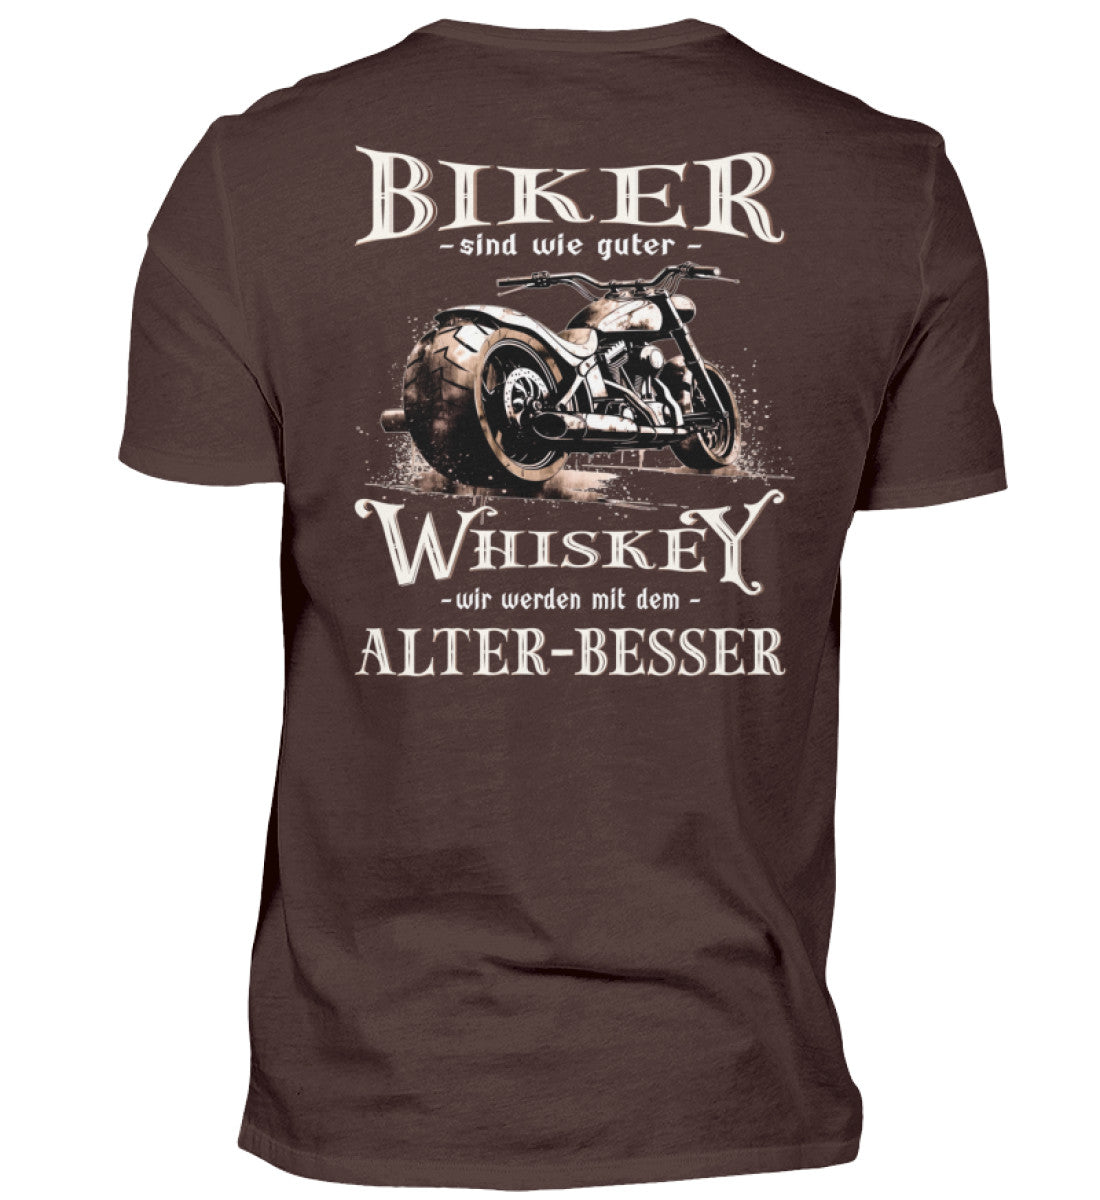 Biker T-Shirt mit einem vintage Aufdruck, Biker sind wie gute Whiskey - wir werden mit dem Alter besser mit Back Print in braun. 